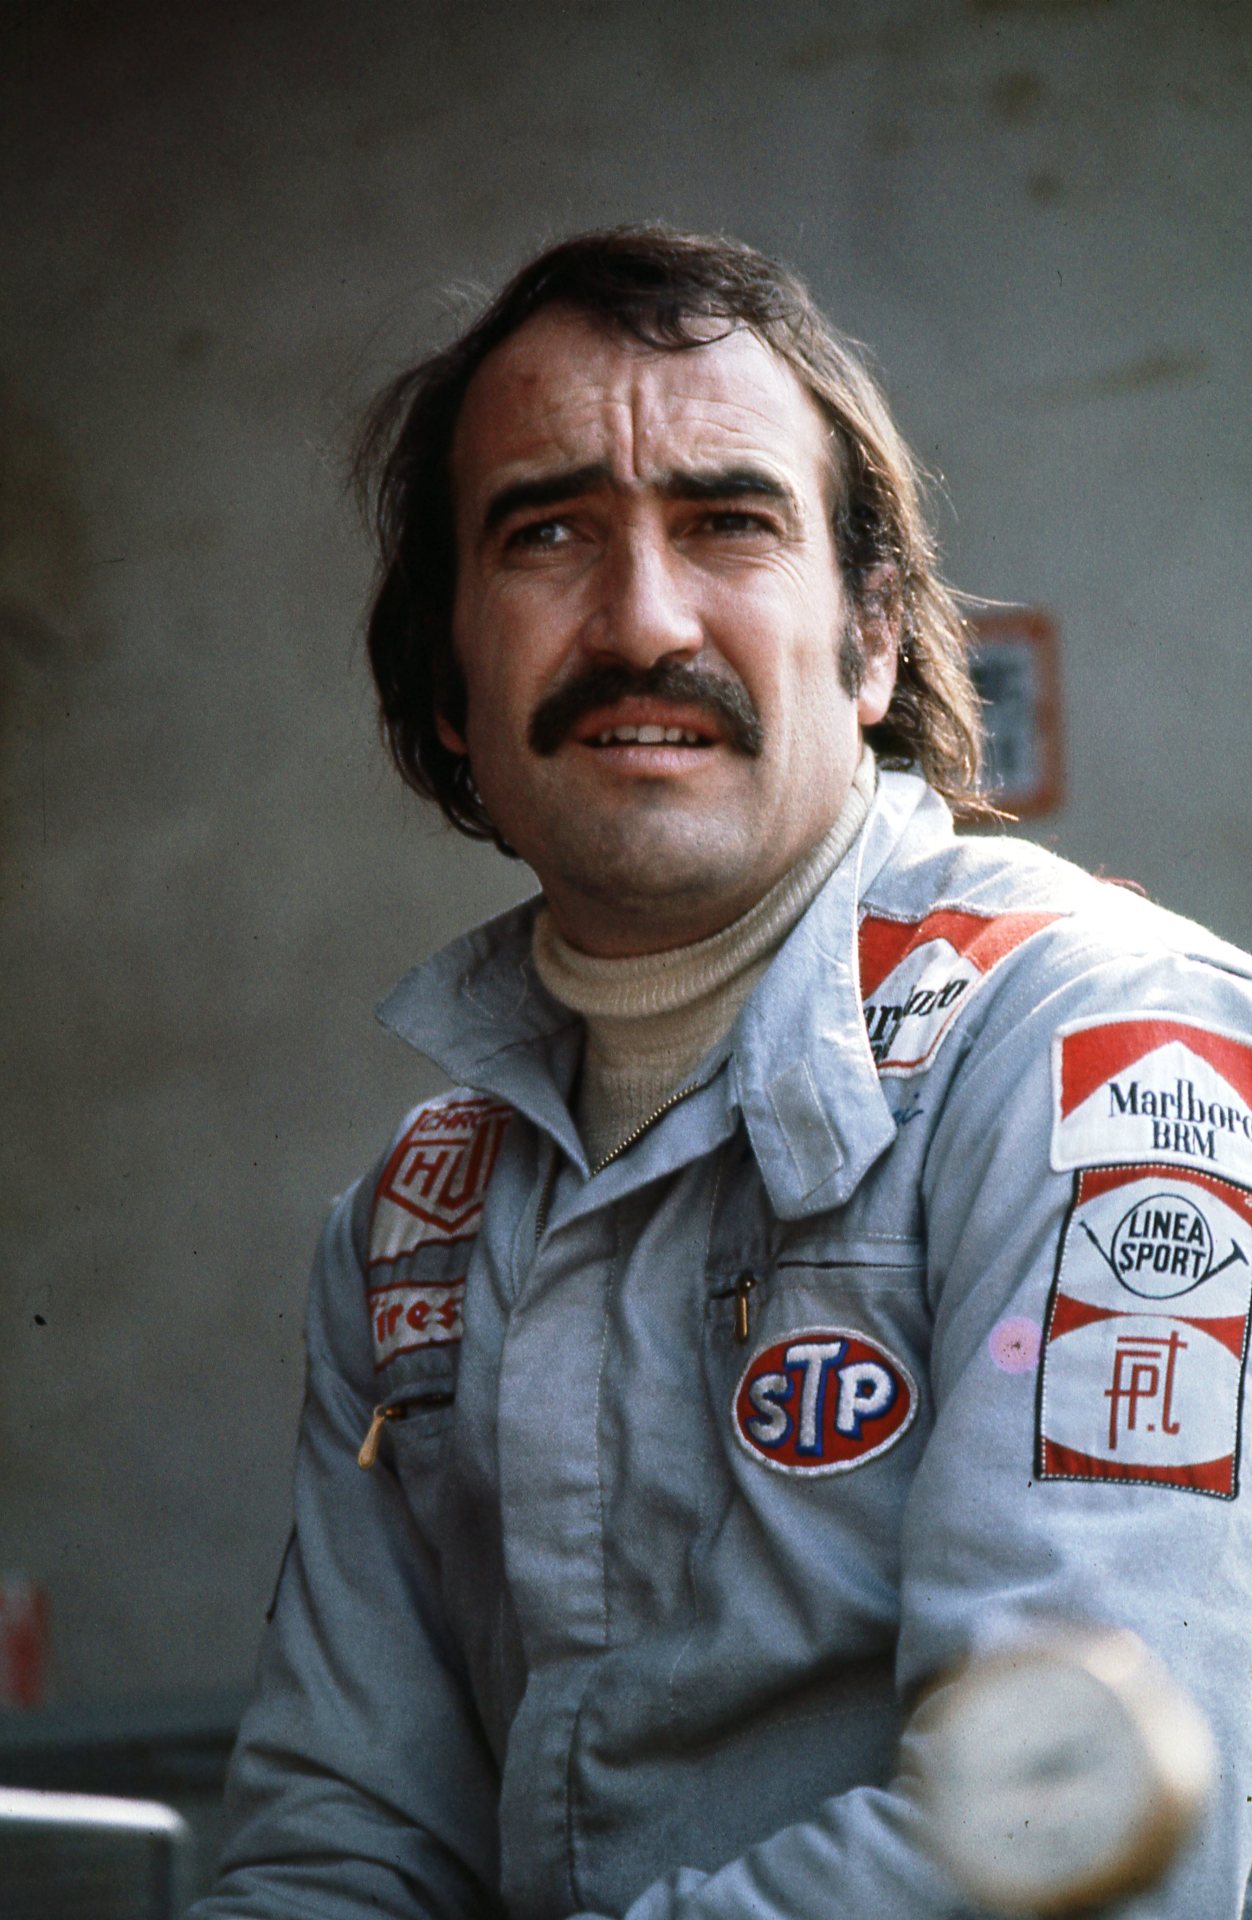 Clay Regazzoni, Marlboro BRM 1973